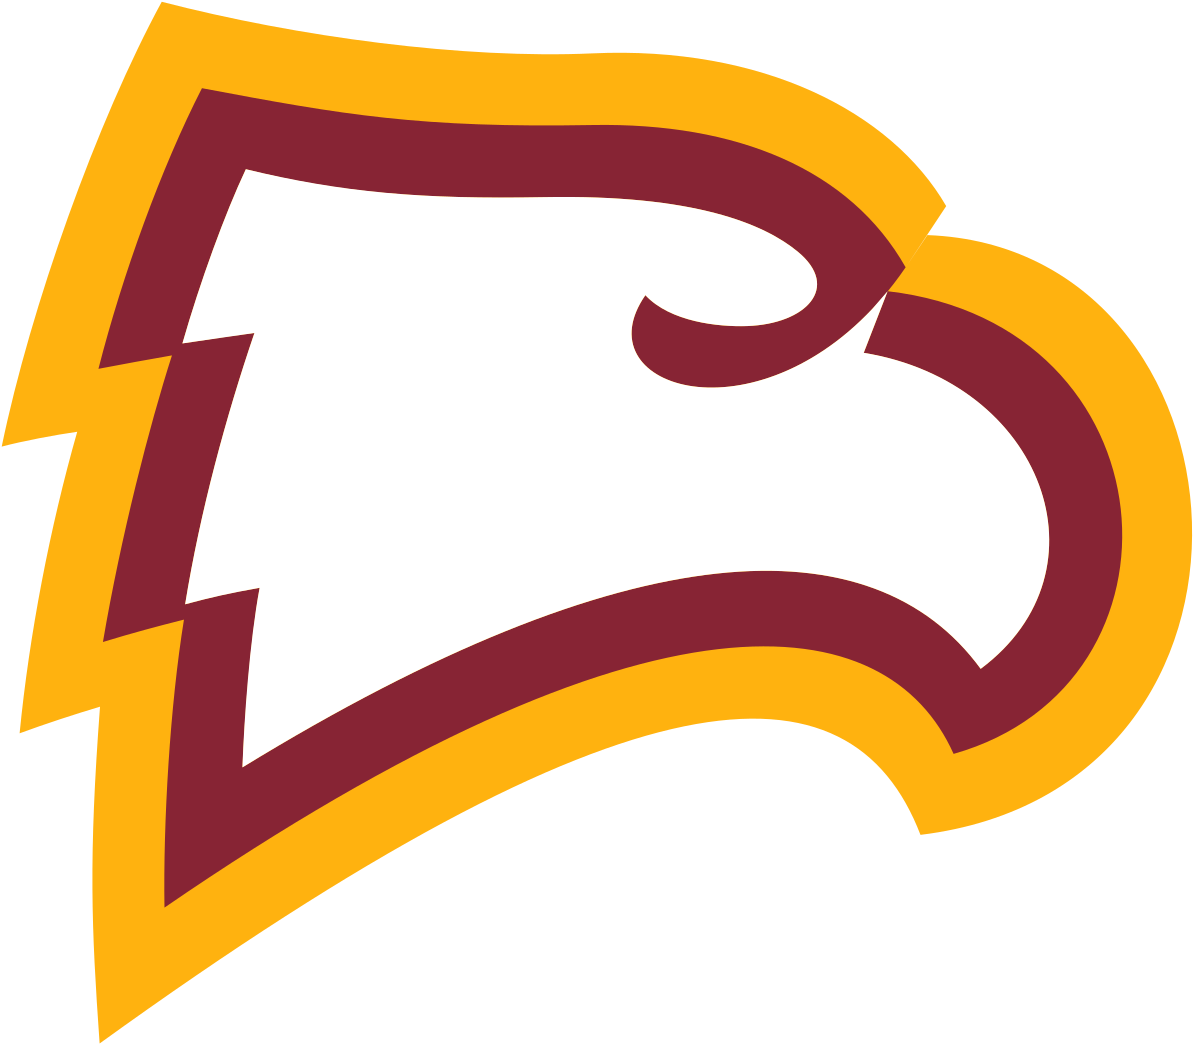 Eagles logo imagen Transparente